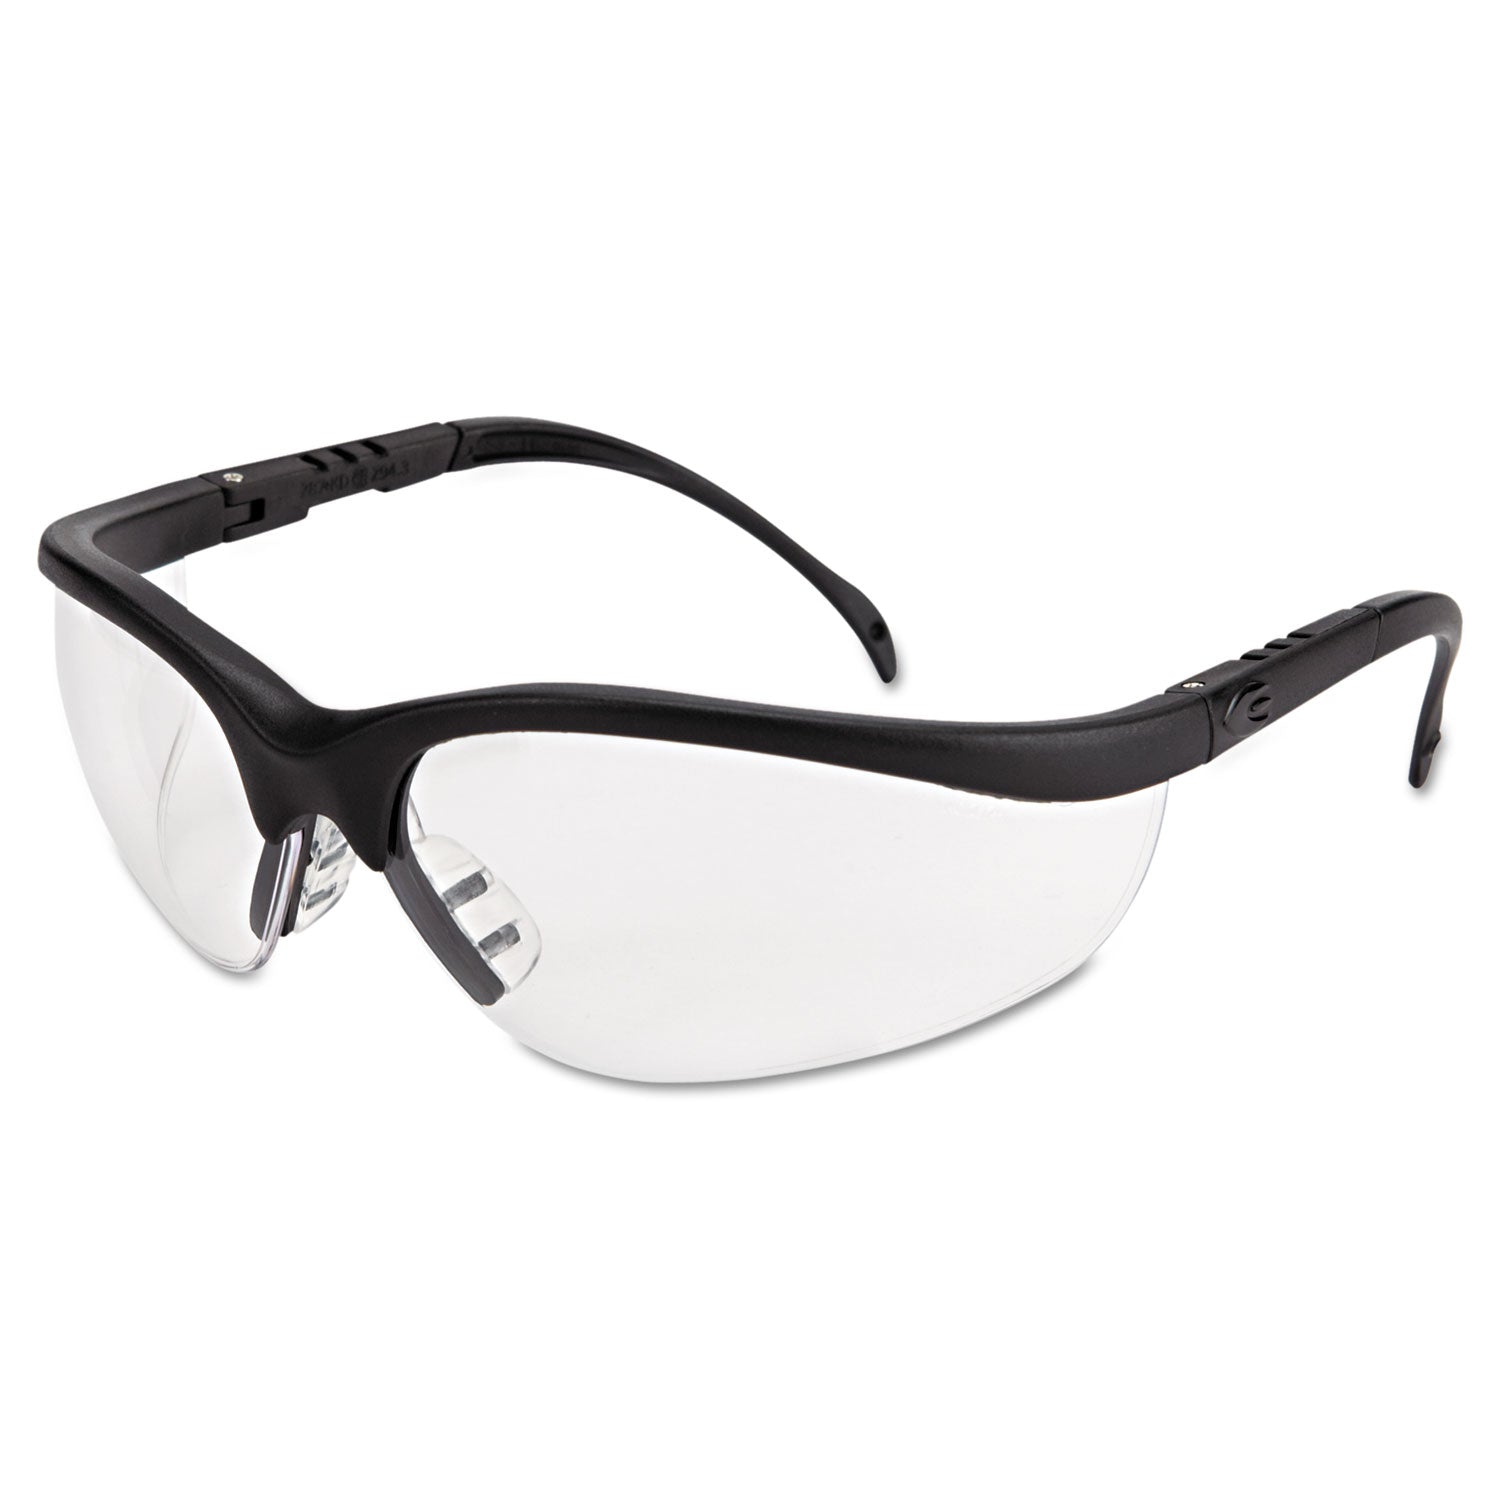 klondike-safety-glasses-matte-black-frame-clear-lens_crwkd110af - 1